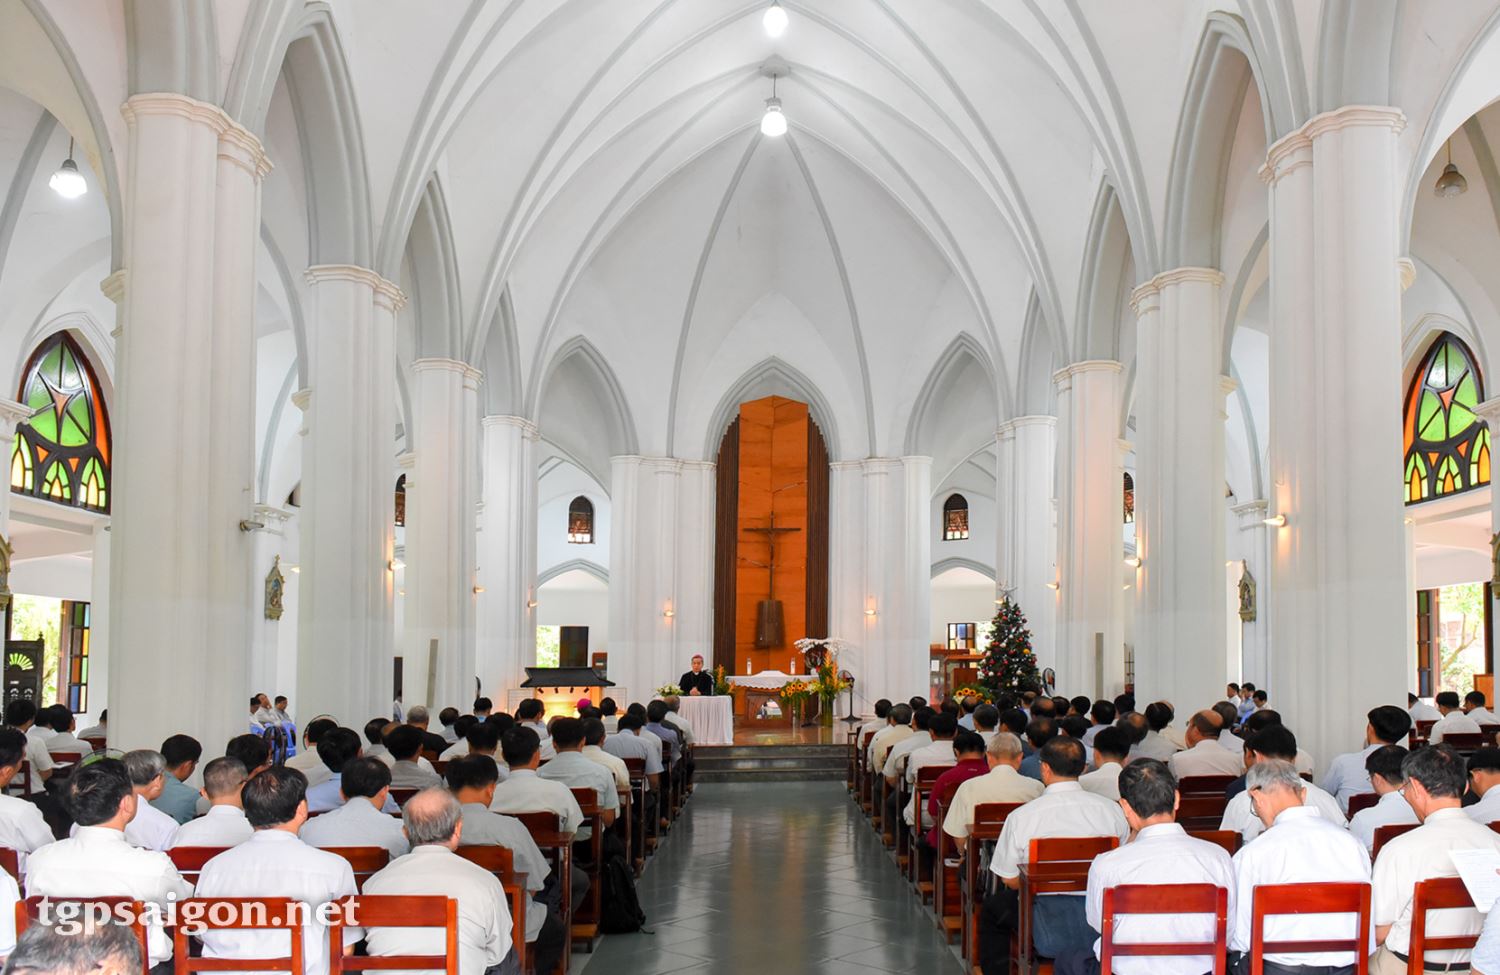 Buổi Tĩnh tâm tháng 1-2023 của linh mục đoàn Tổng Giáo phận Sài Gòn